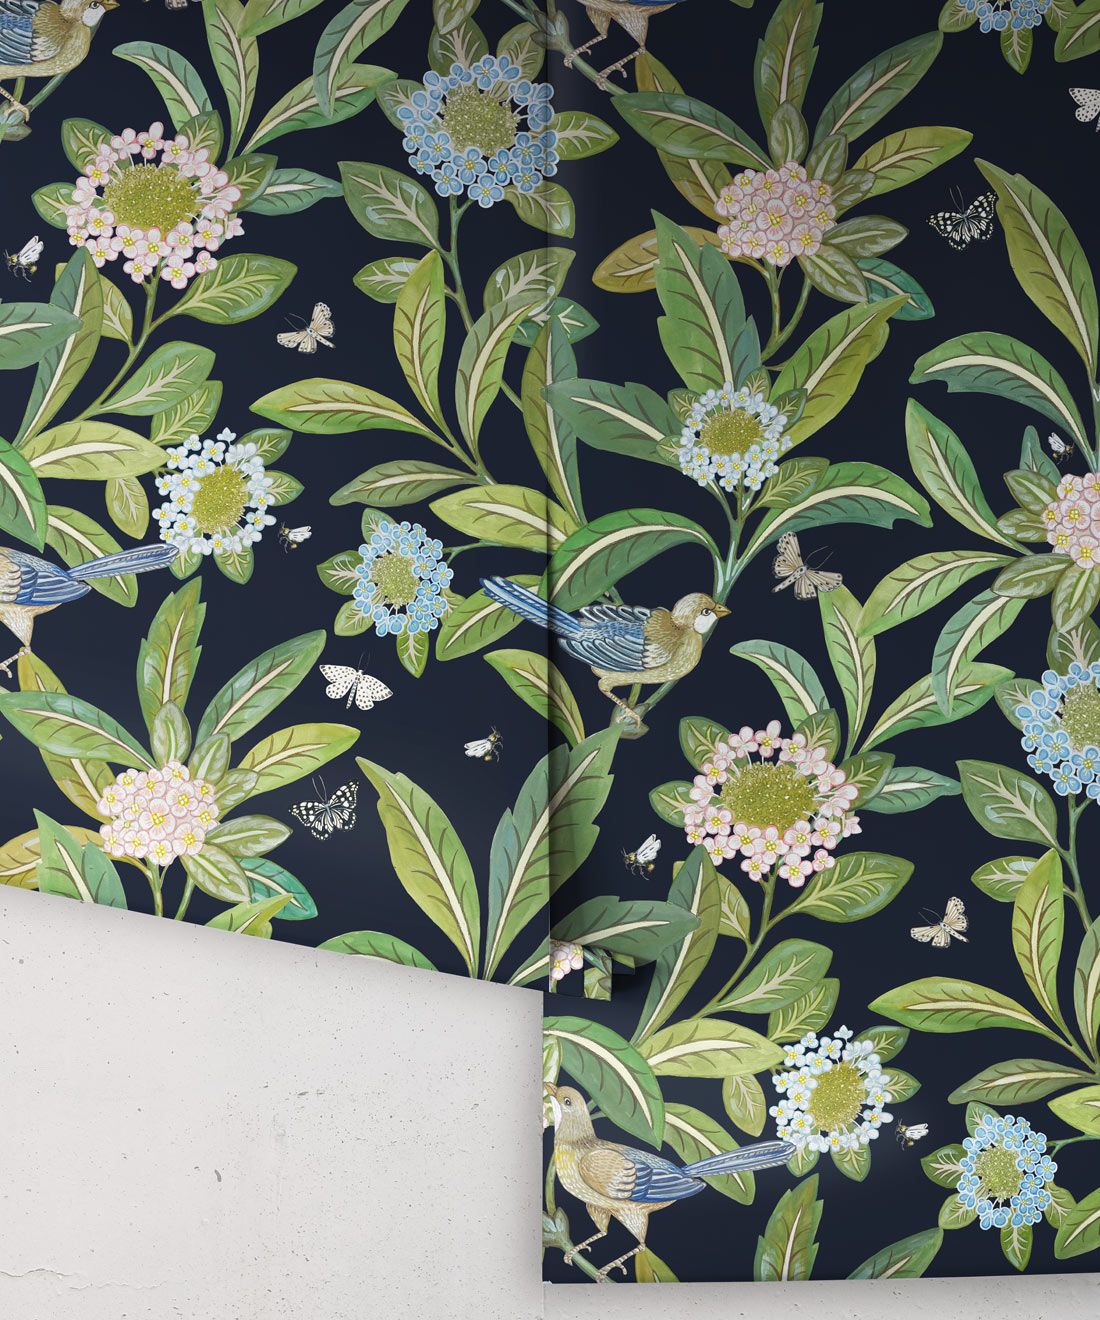 Summer Garden Wallpaper • Original Wallpaper • Floral Wallpaper Rolls